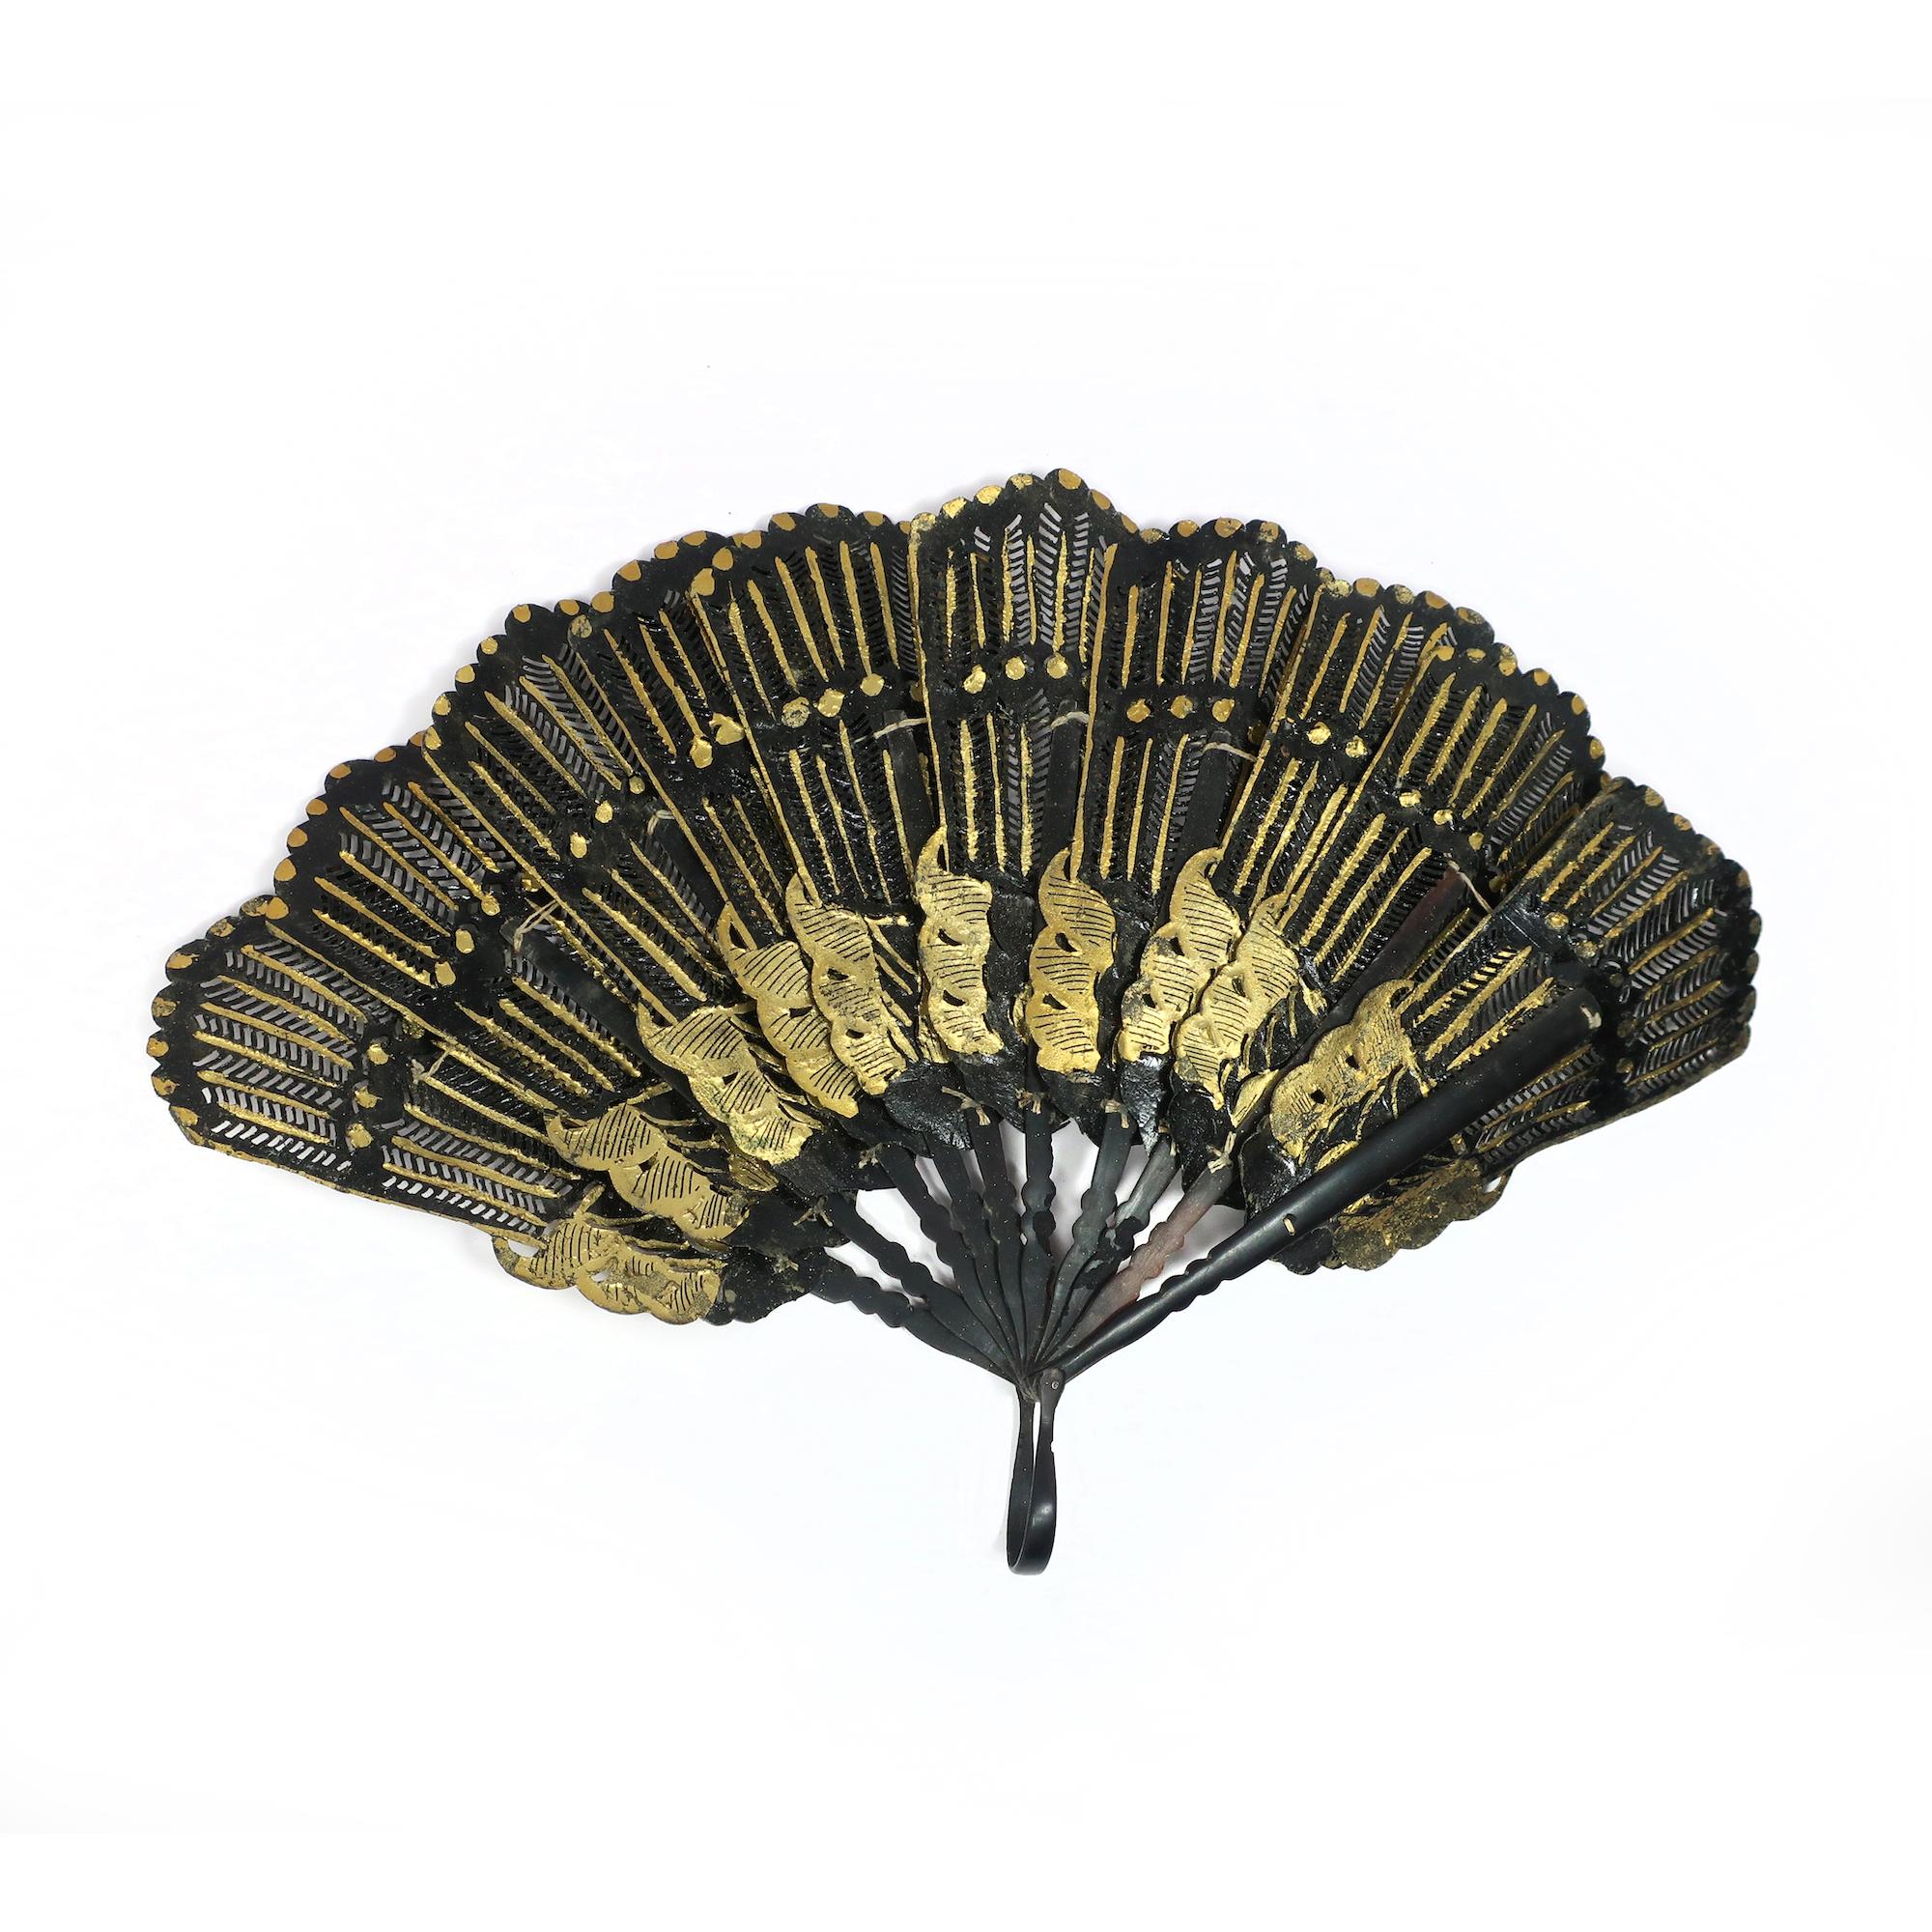 Ein wunderschönes und seltenes Exemplar eines Handfächers aus dem 19. Jahrhundert, hergestellt aus schwarzem Leder und mit Blattgold verziert. Der Fächer hat einen Brisé-Stil, das heißt, er besteht aus schmalen Stäben, die oben miteinander verbunden